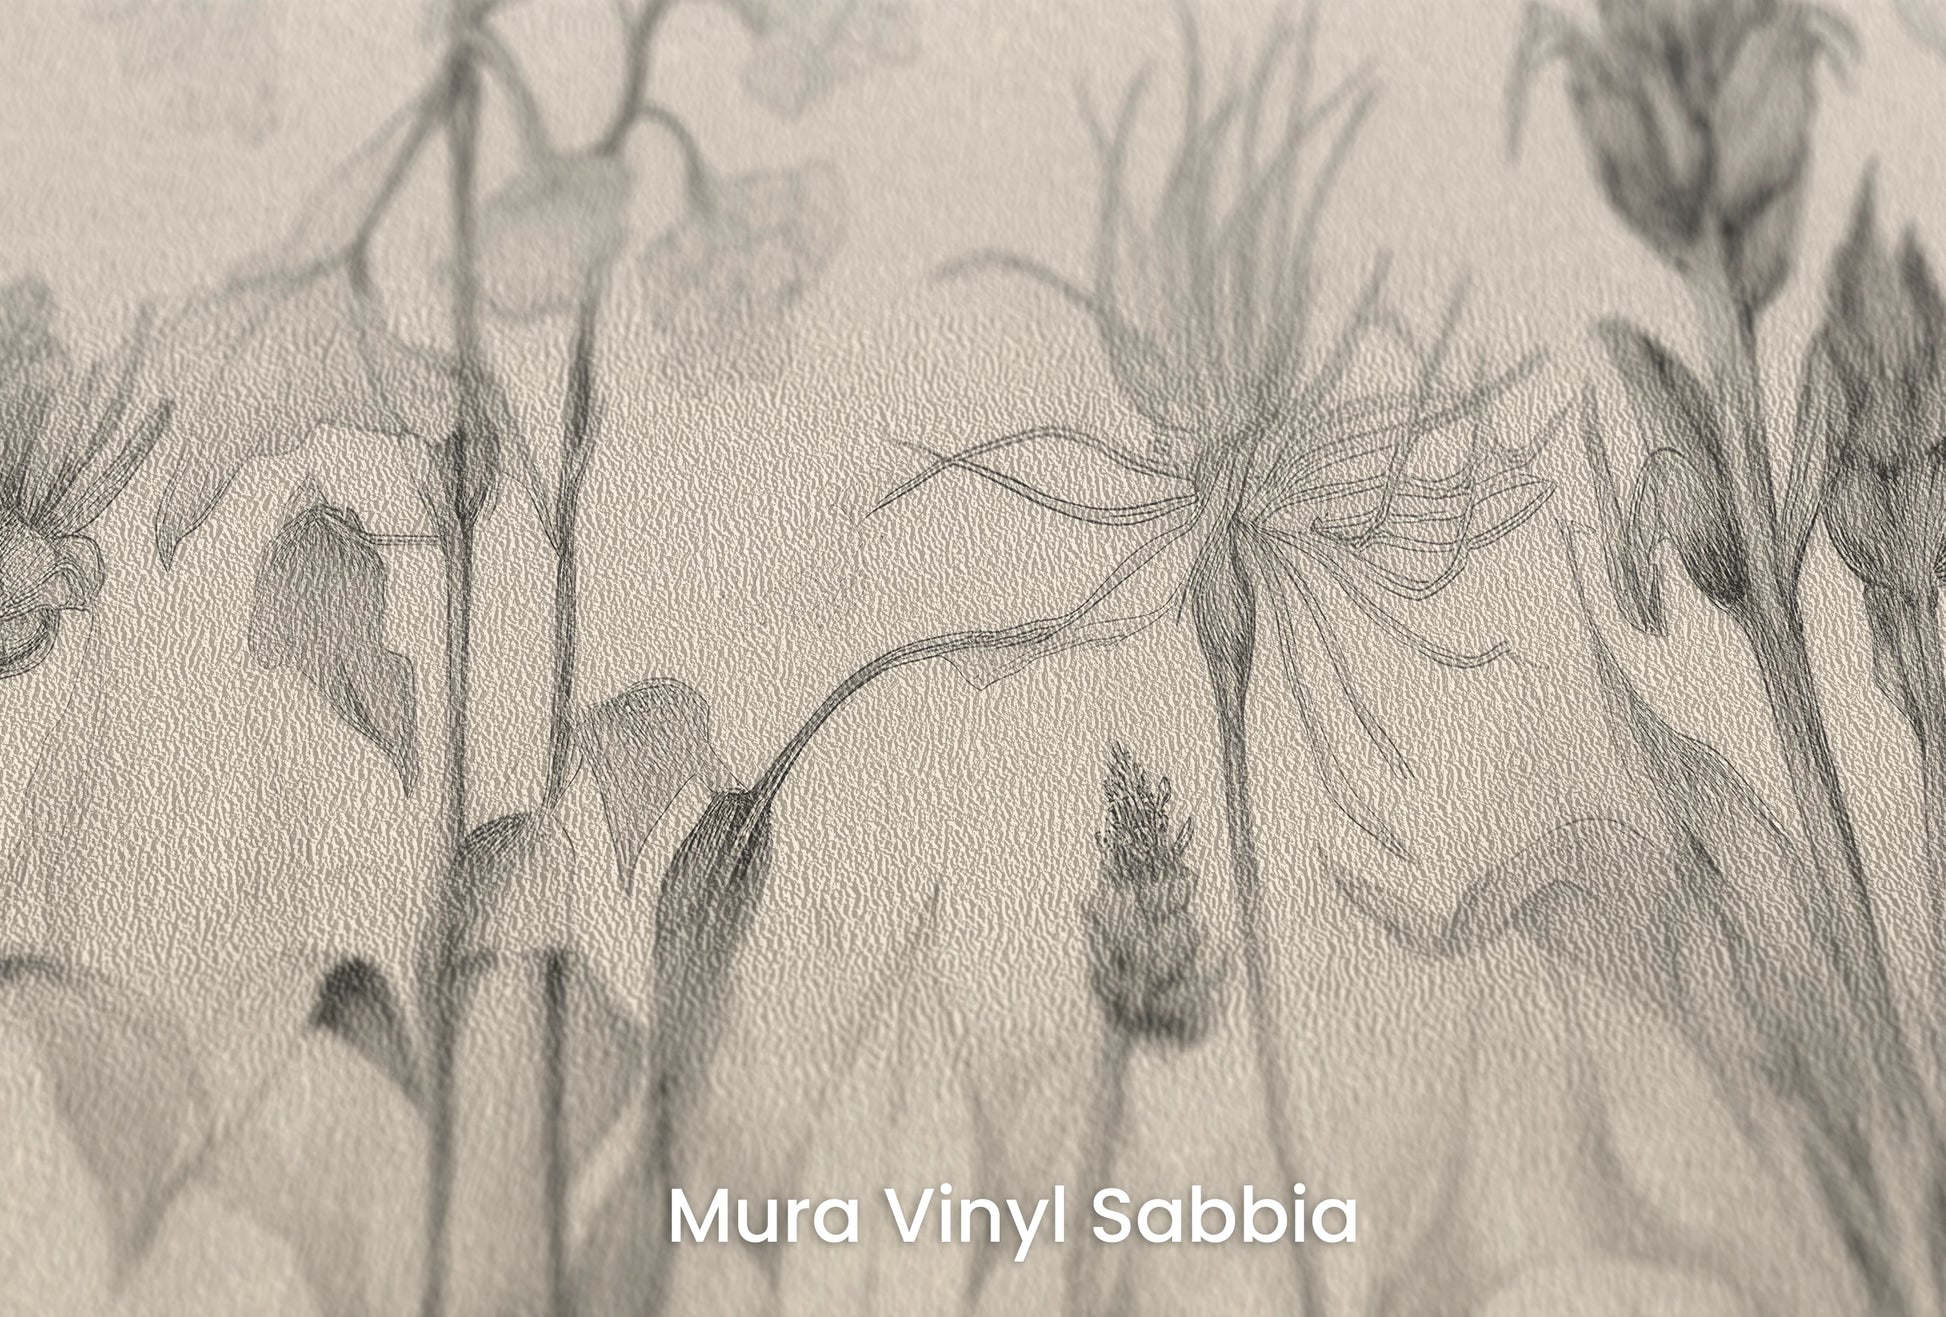 Zbliżenie na artystyczną fototapetę o nazwie Petal Whispers na podłożu Mura Vinyl Sabbia struktura grubego ziarna piasku.